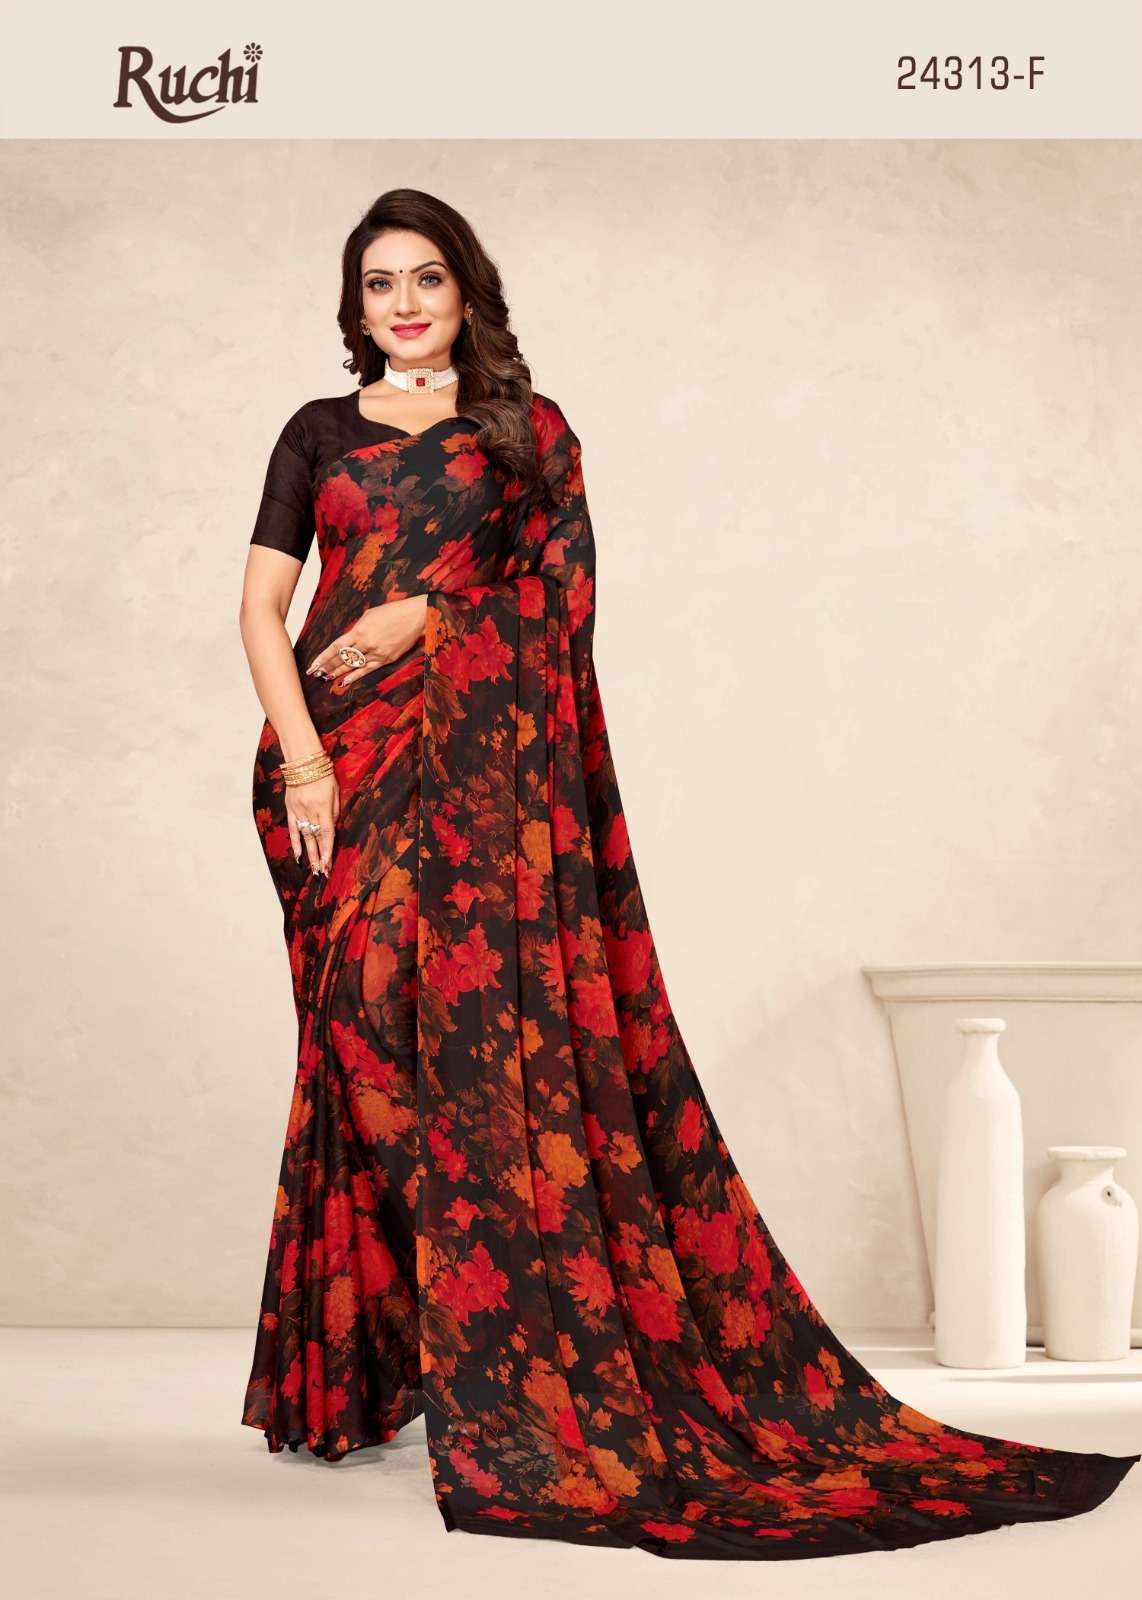 ruchi star chiffon 24313 designer flower printed saree collection 